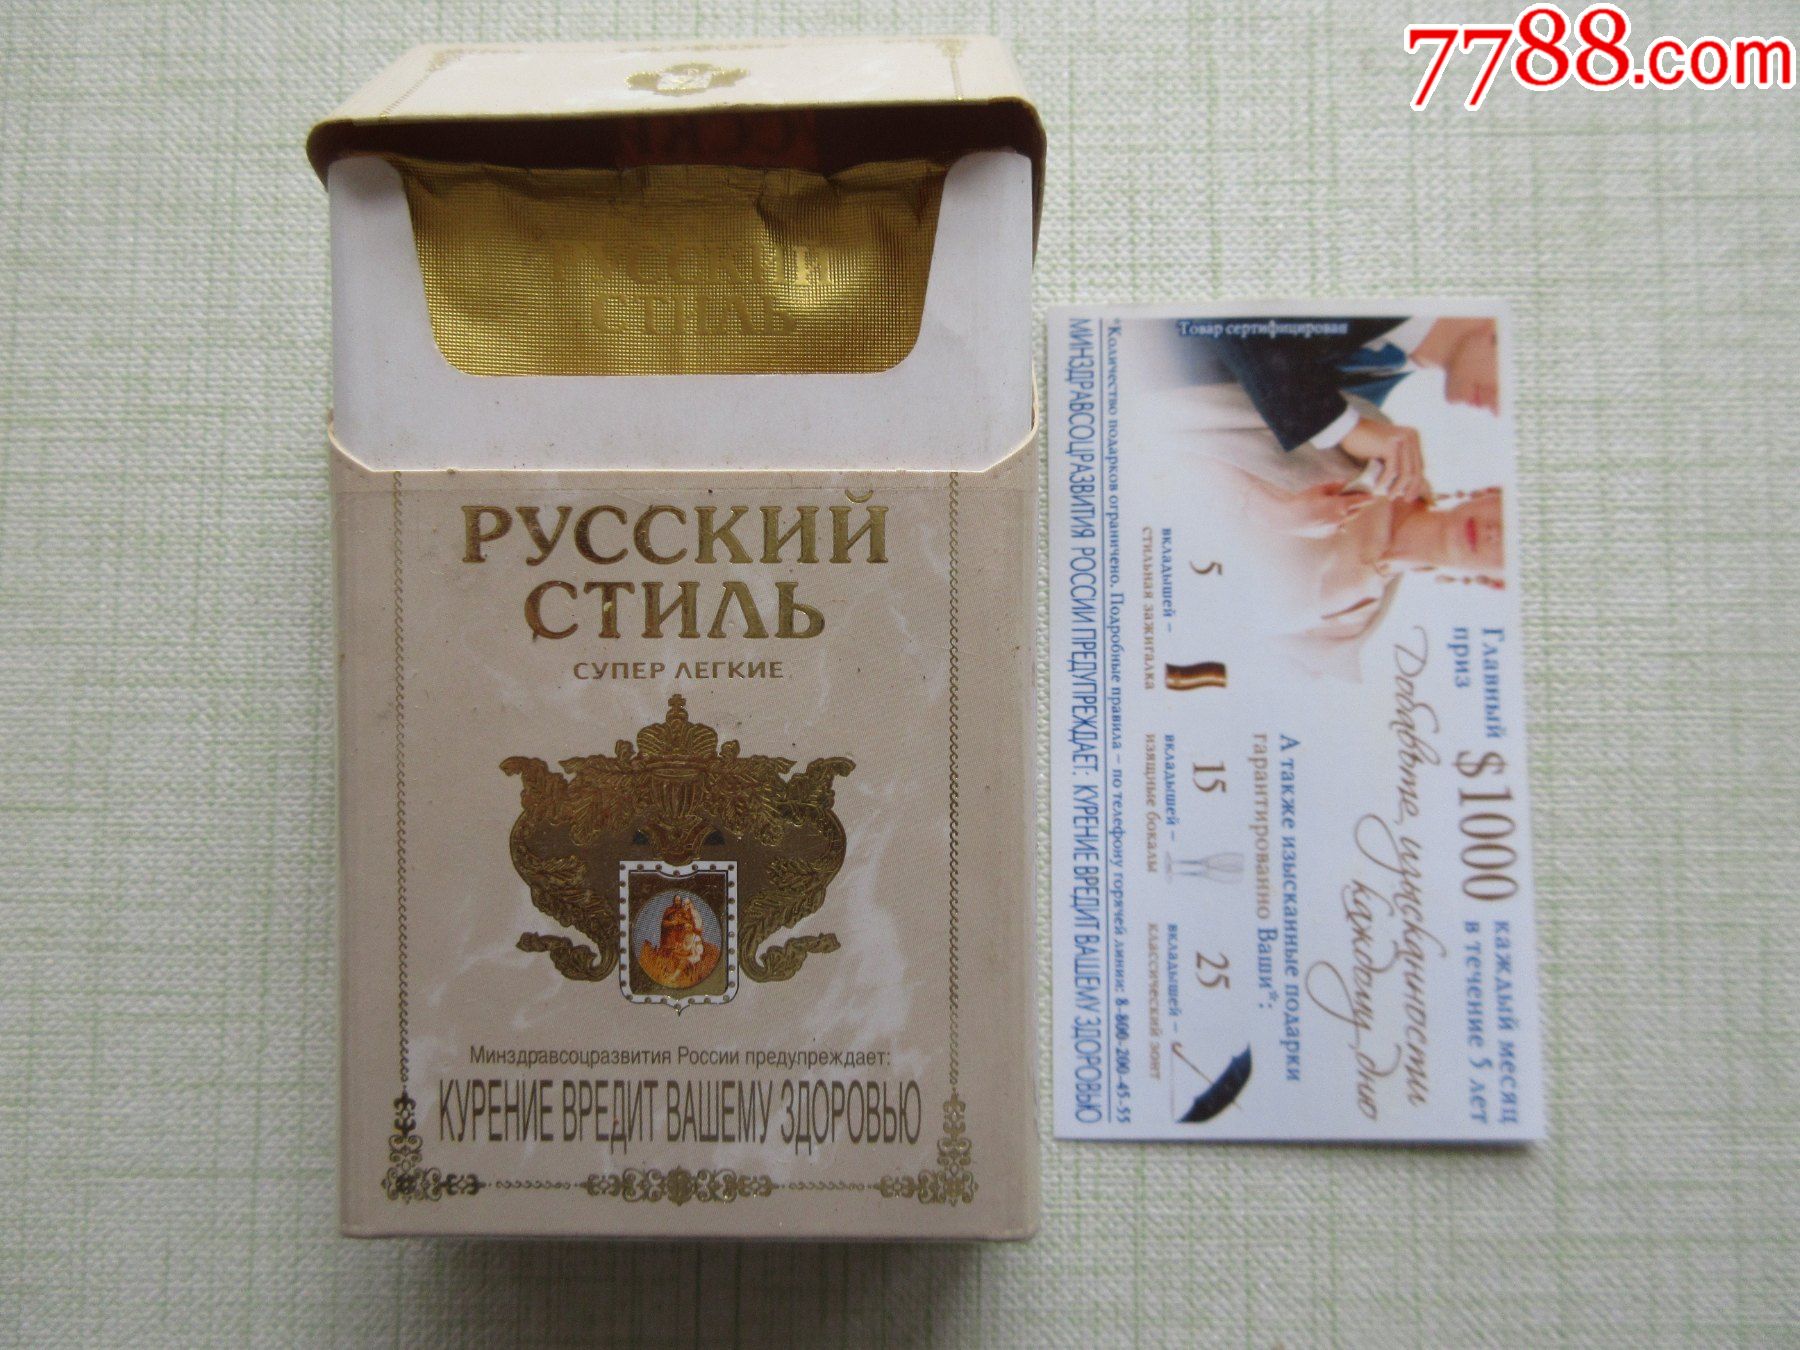 pyccknnctnab俄罗斯烟盒带烟卡